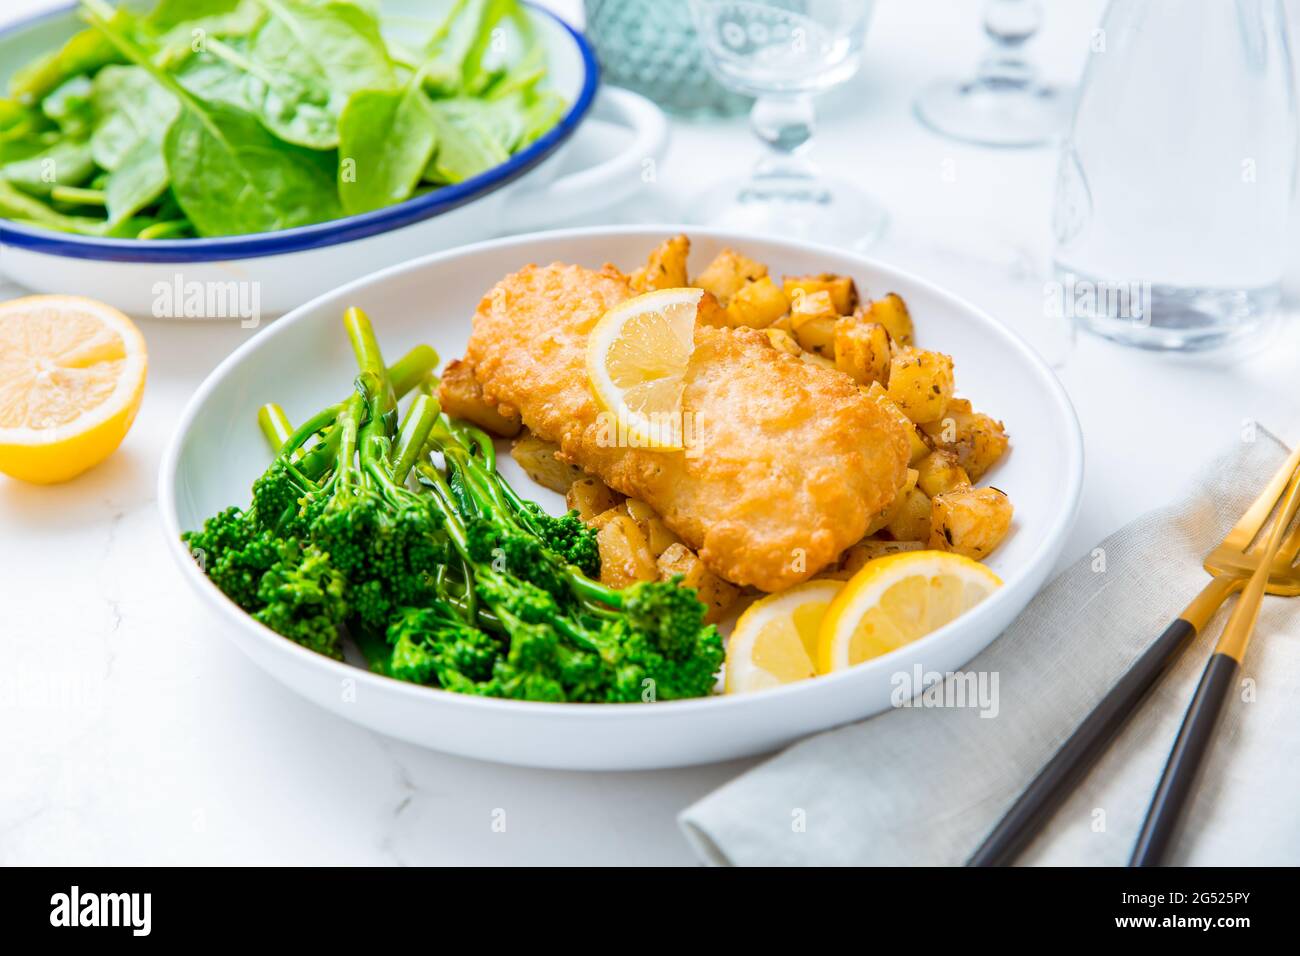 Filetto di fisch impanato con patate piccanti al forno e insalata di broccoli (bimi) con limone Foto Stock